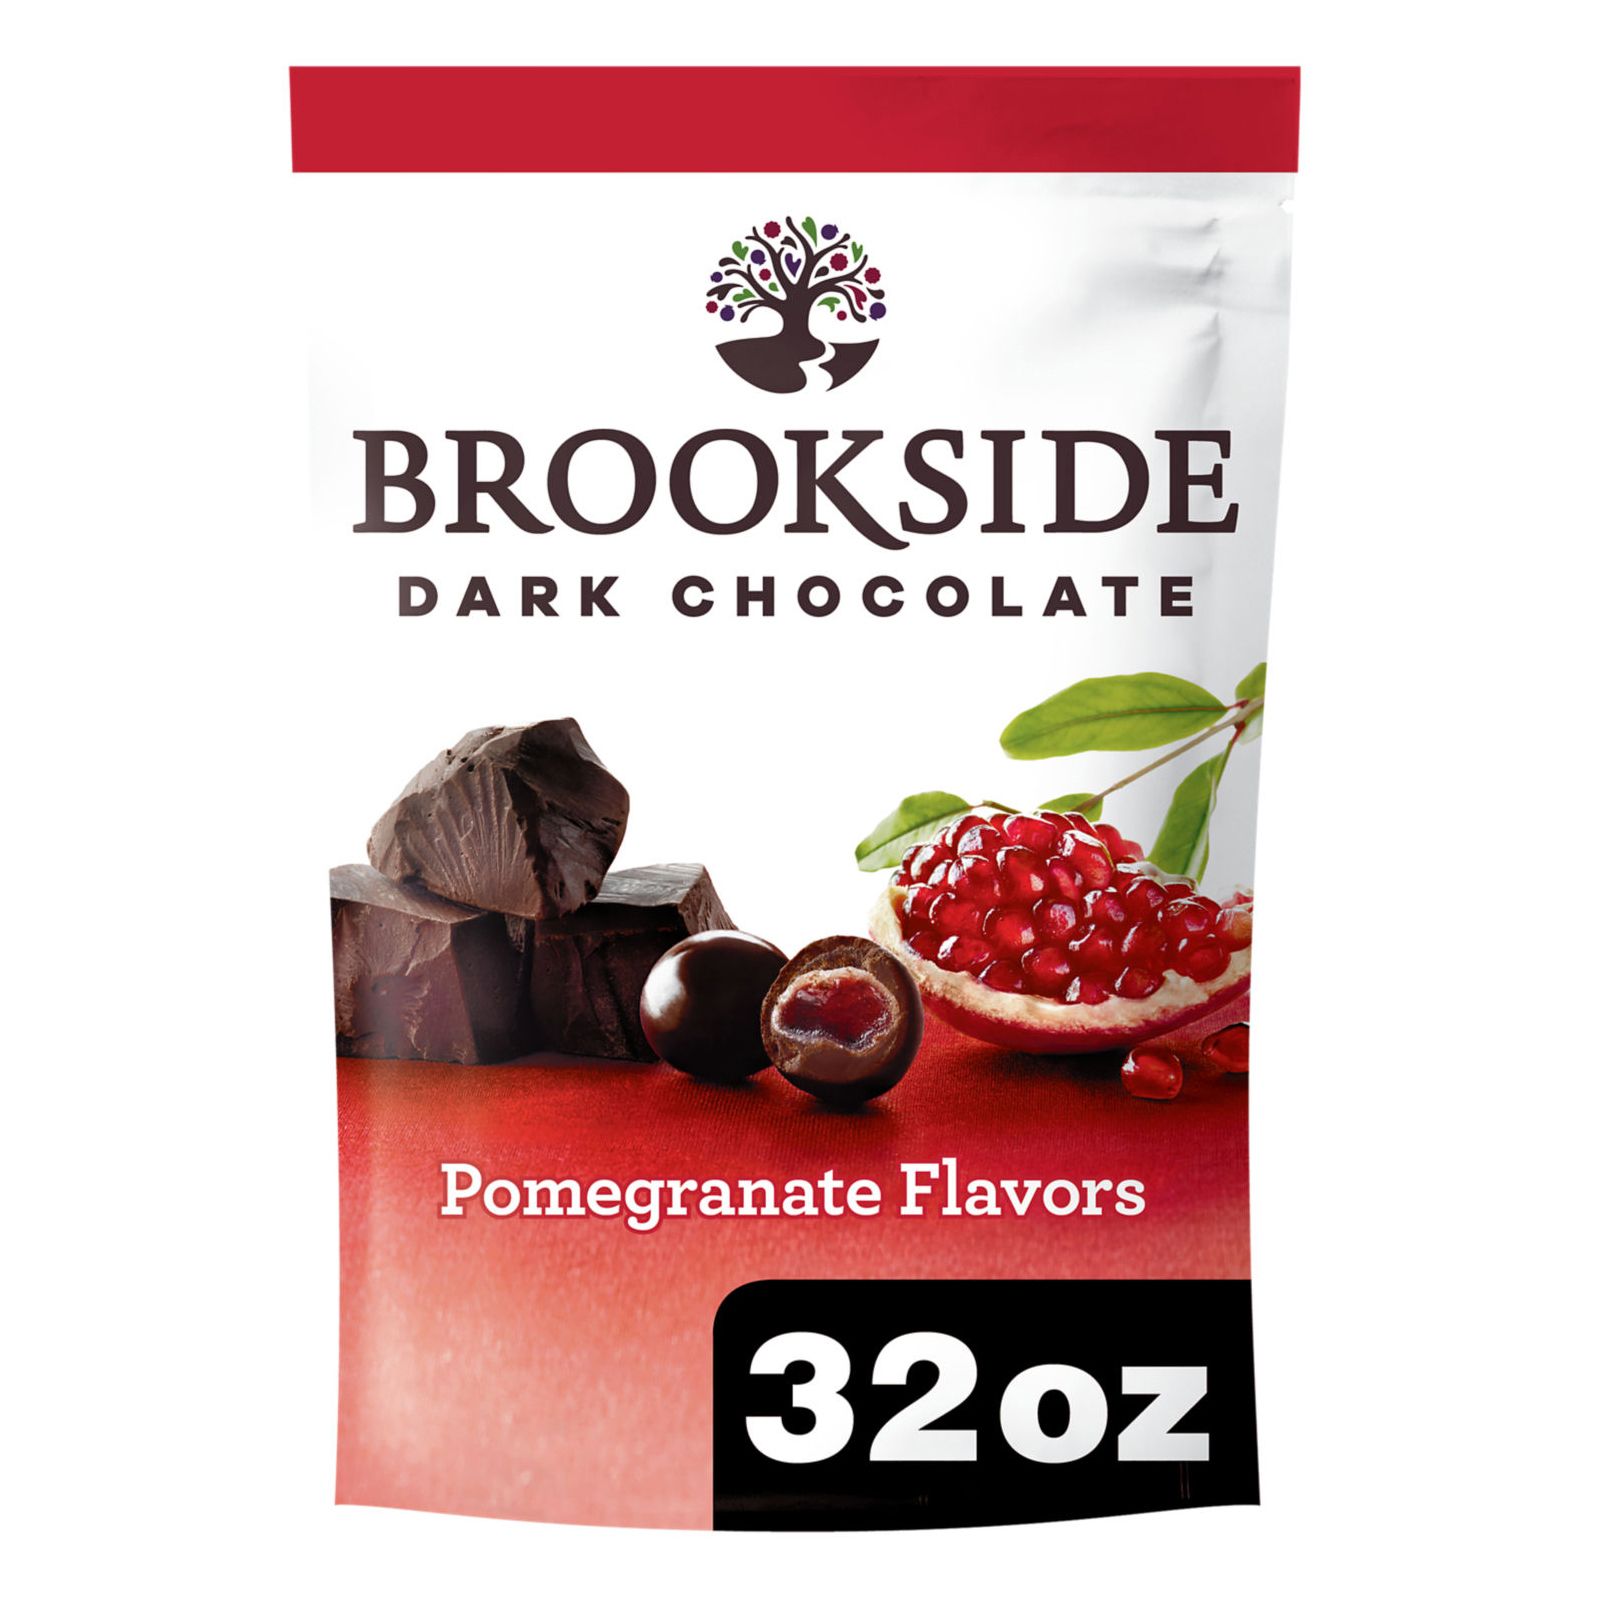 Brookside Dark Chocolate Pomegranate, 32 oz.